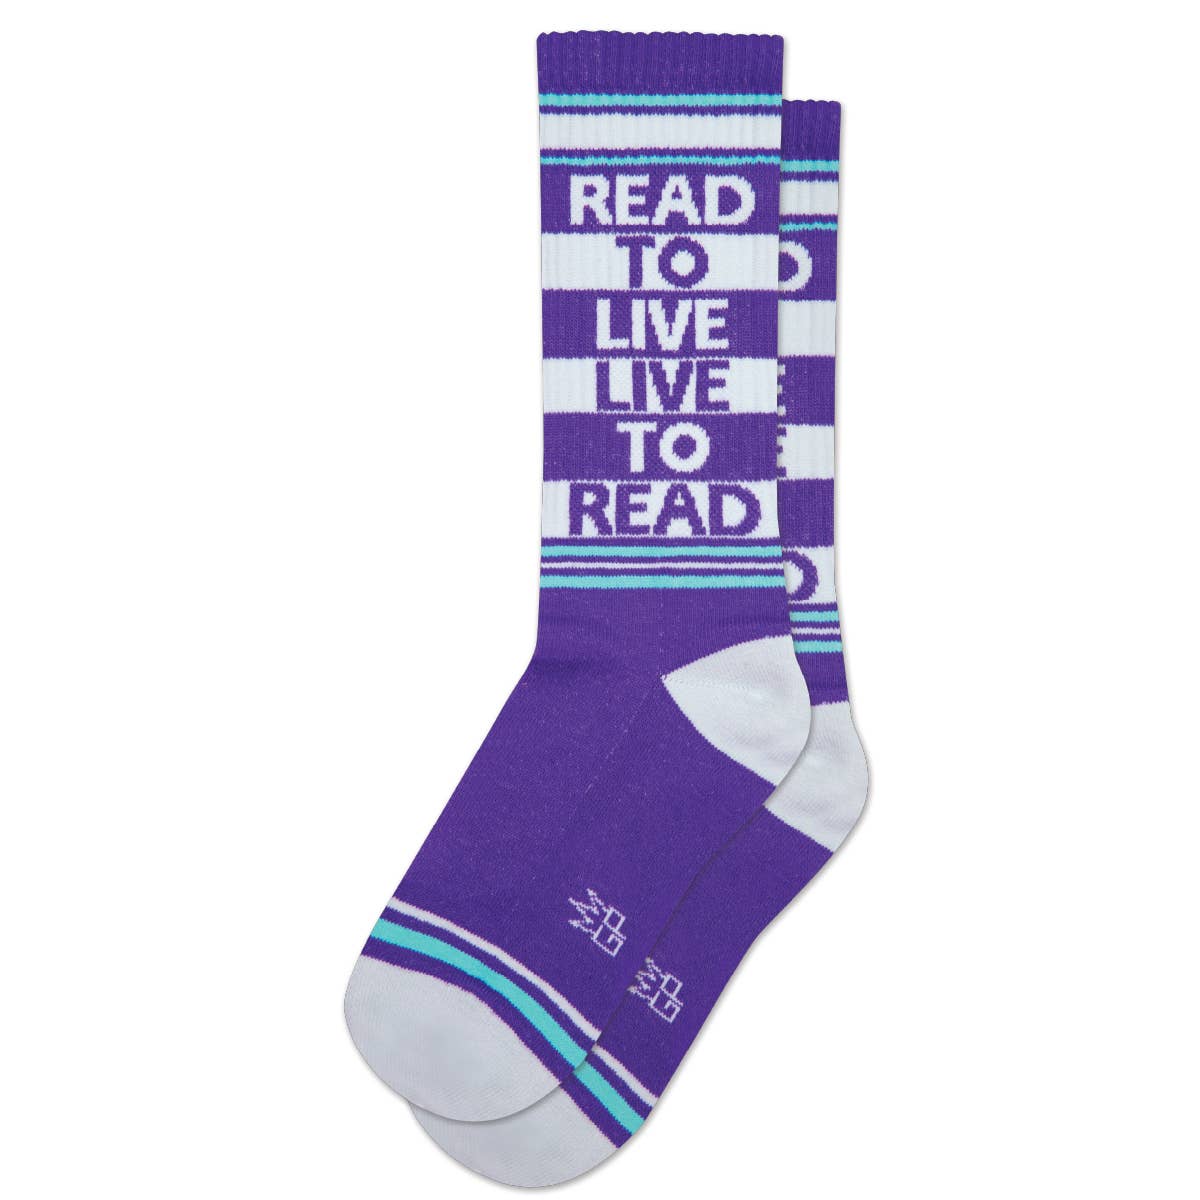 Calcetines - Leer para vivir, vivir para leer